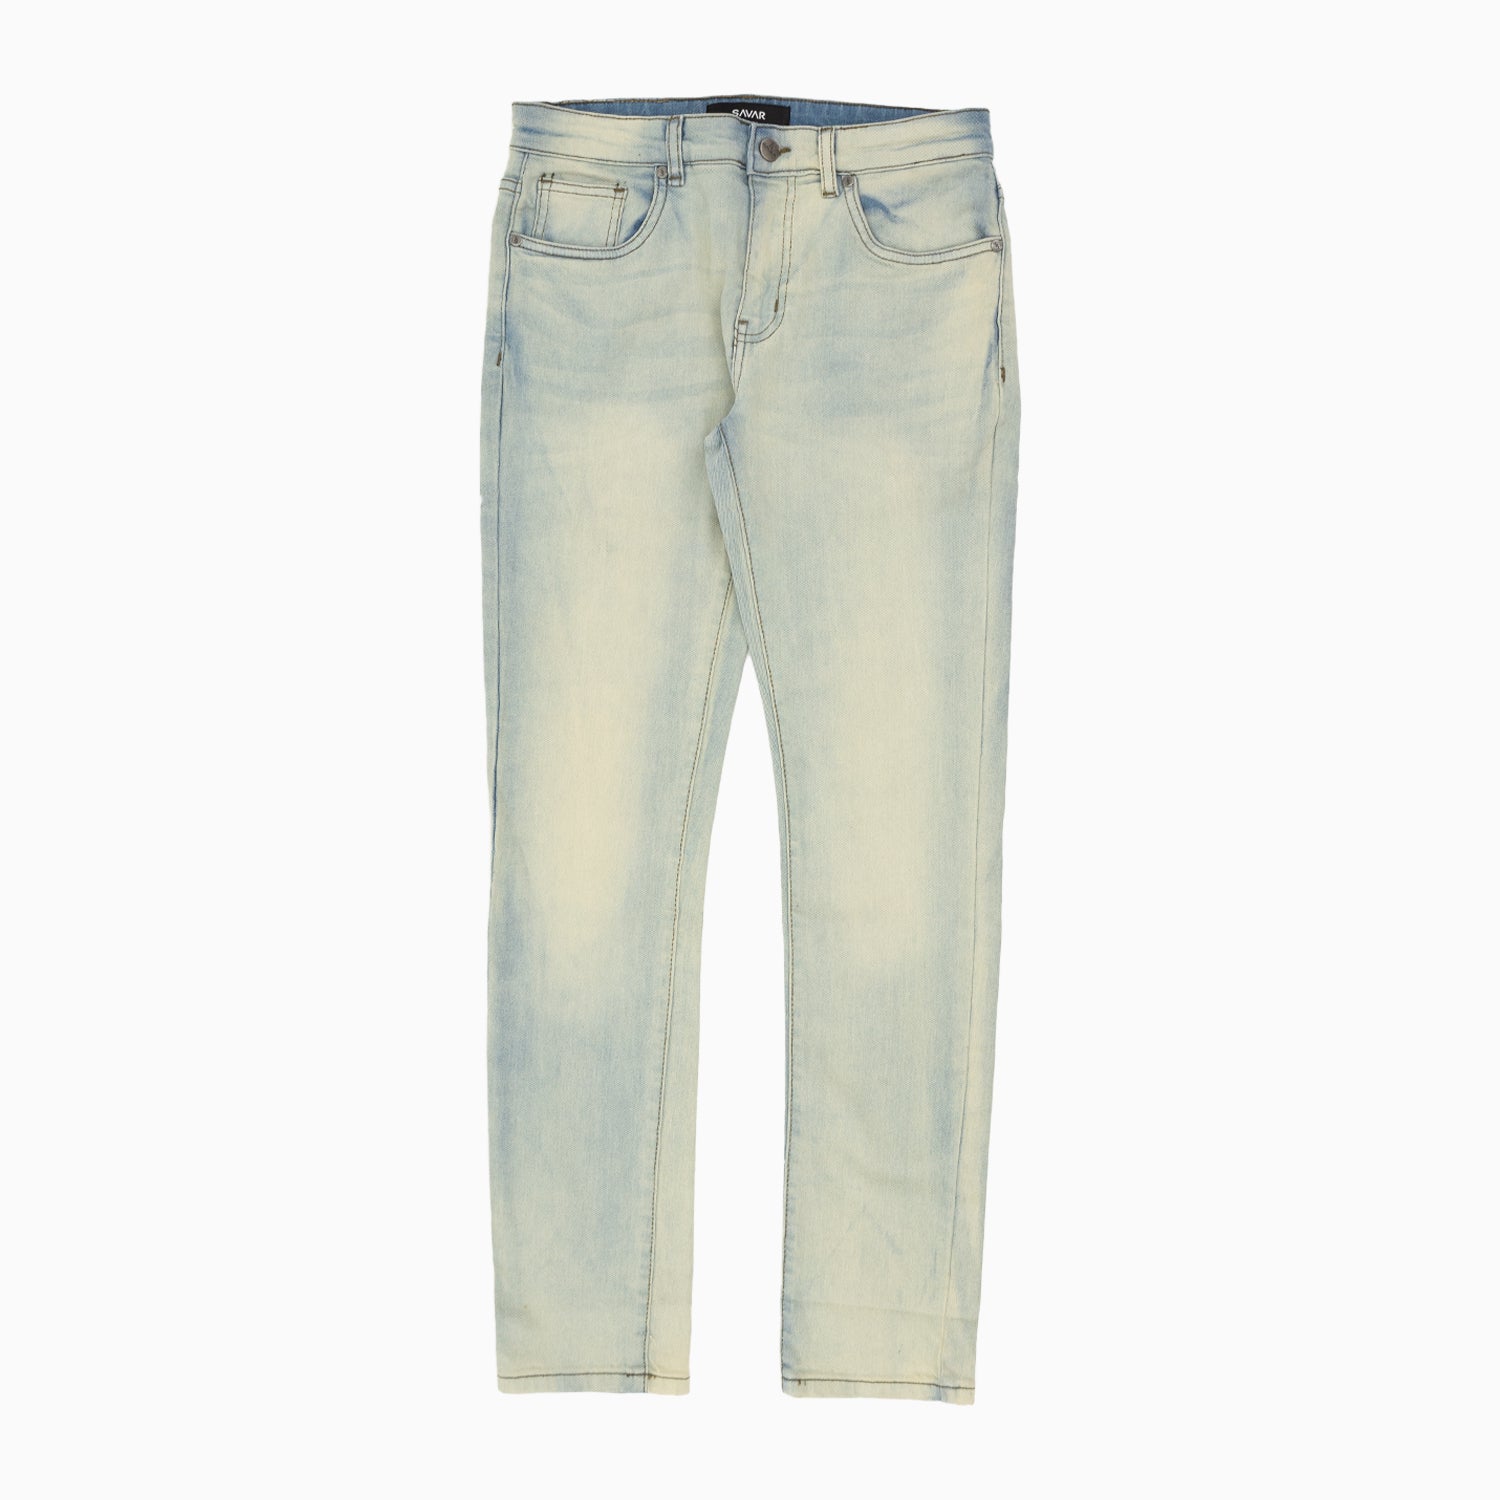 mens-savar-ice-blue-tinted-slim-denim-jeans-pant-sjr0970-iceblut